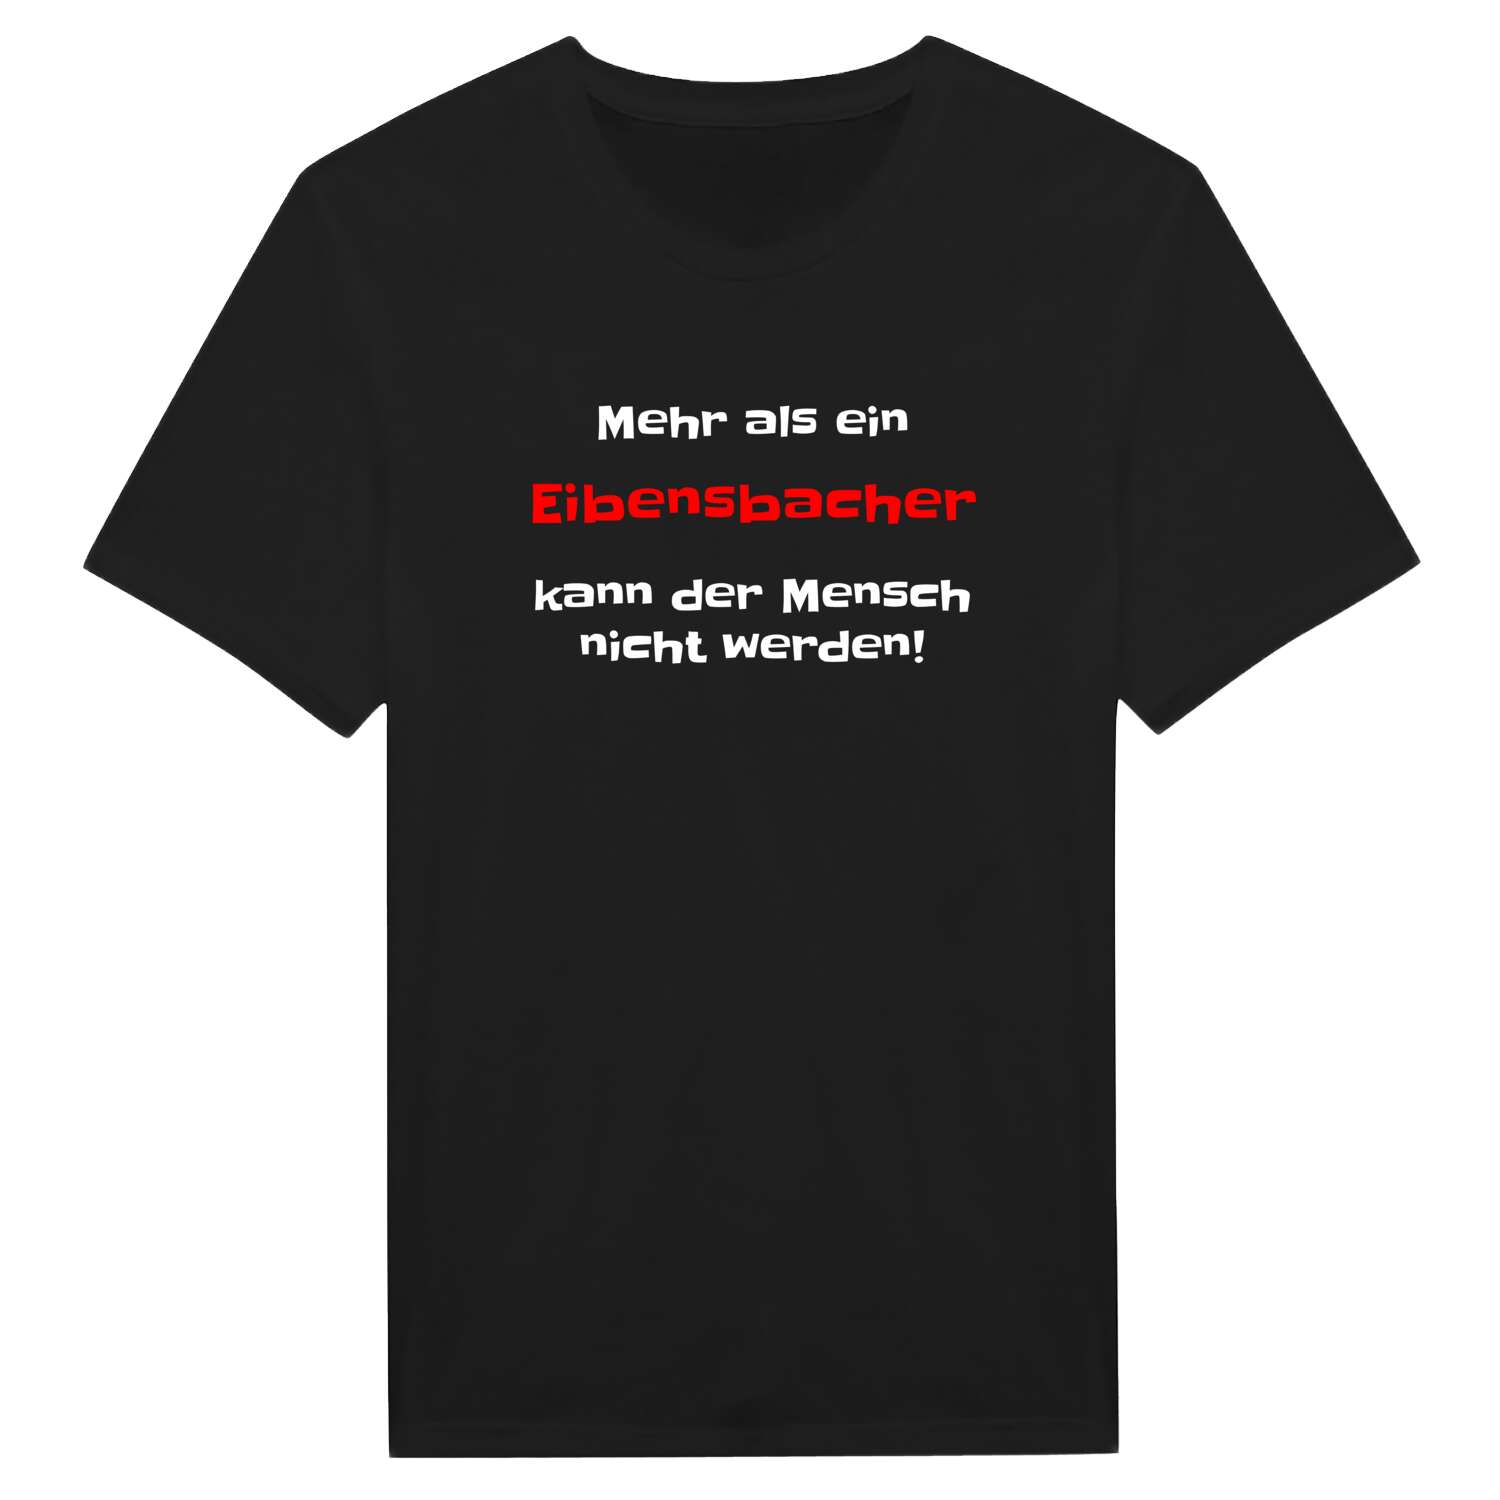 Eibensbach T-Shirt »Mehr als ein«